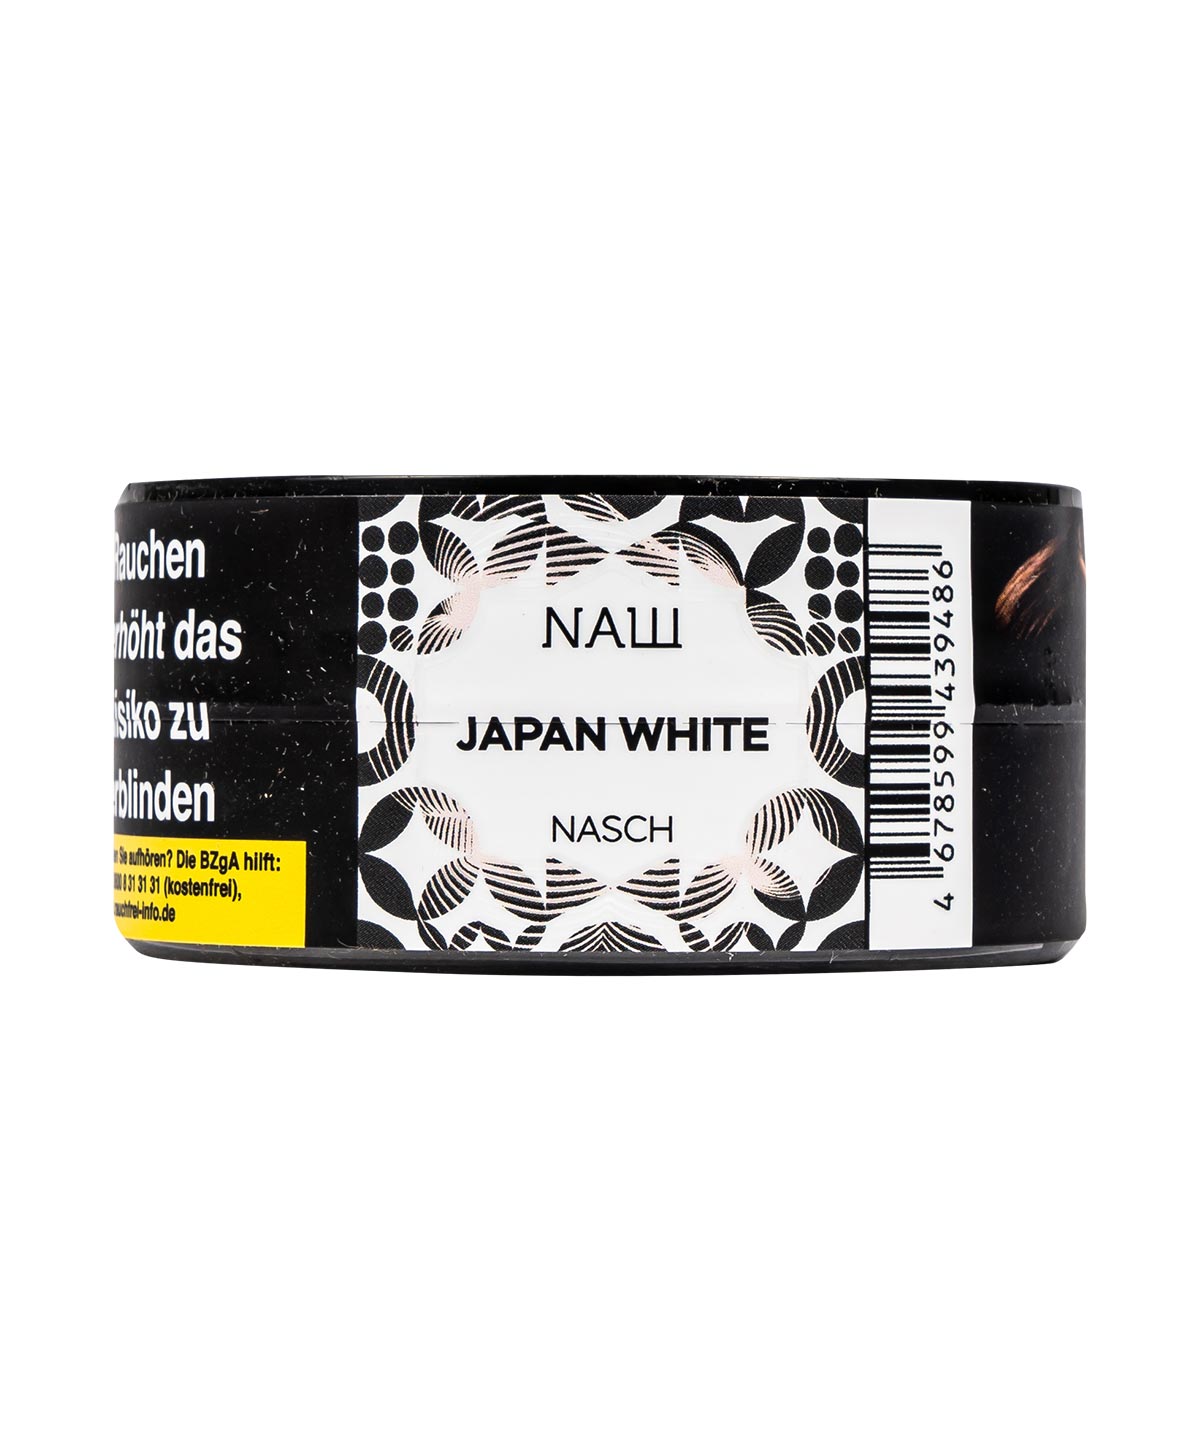 Nasch Japan White 25g